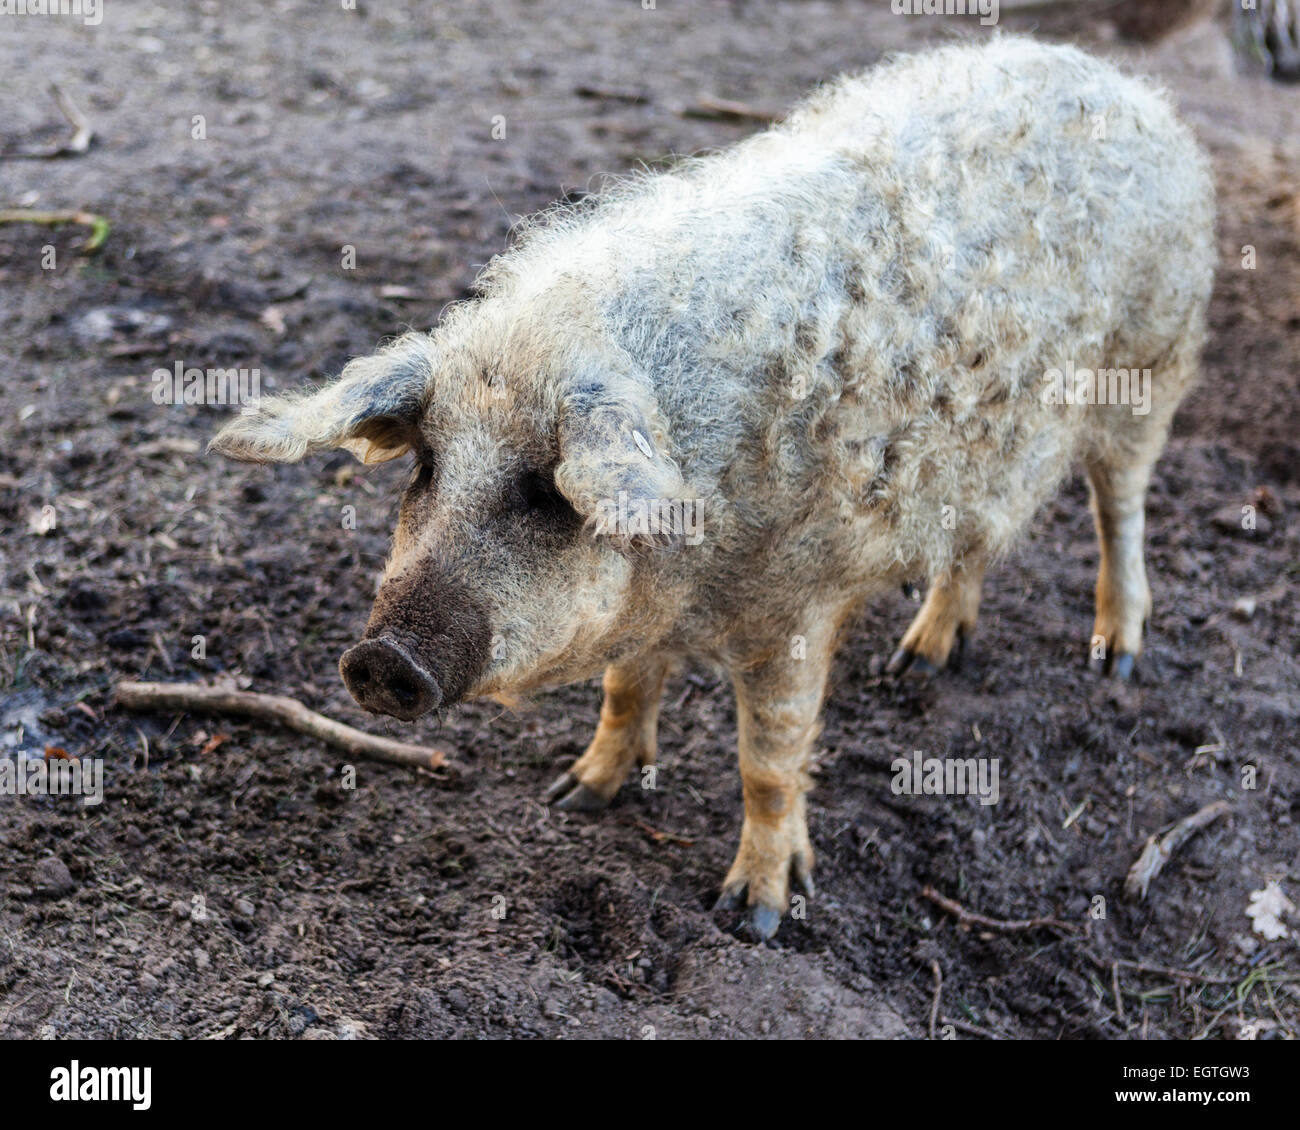 Germany, Schorfheide Game Reserve, Wildpark Schorfheide Wild park. Mangalitza-Wollschwein woolly pigs under threat of extinction Stock Photo